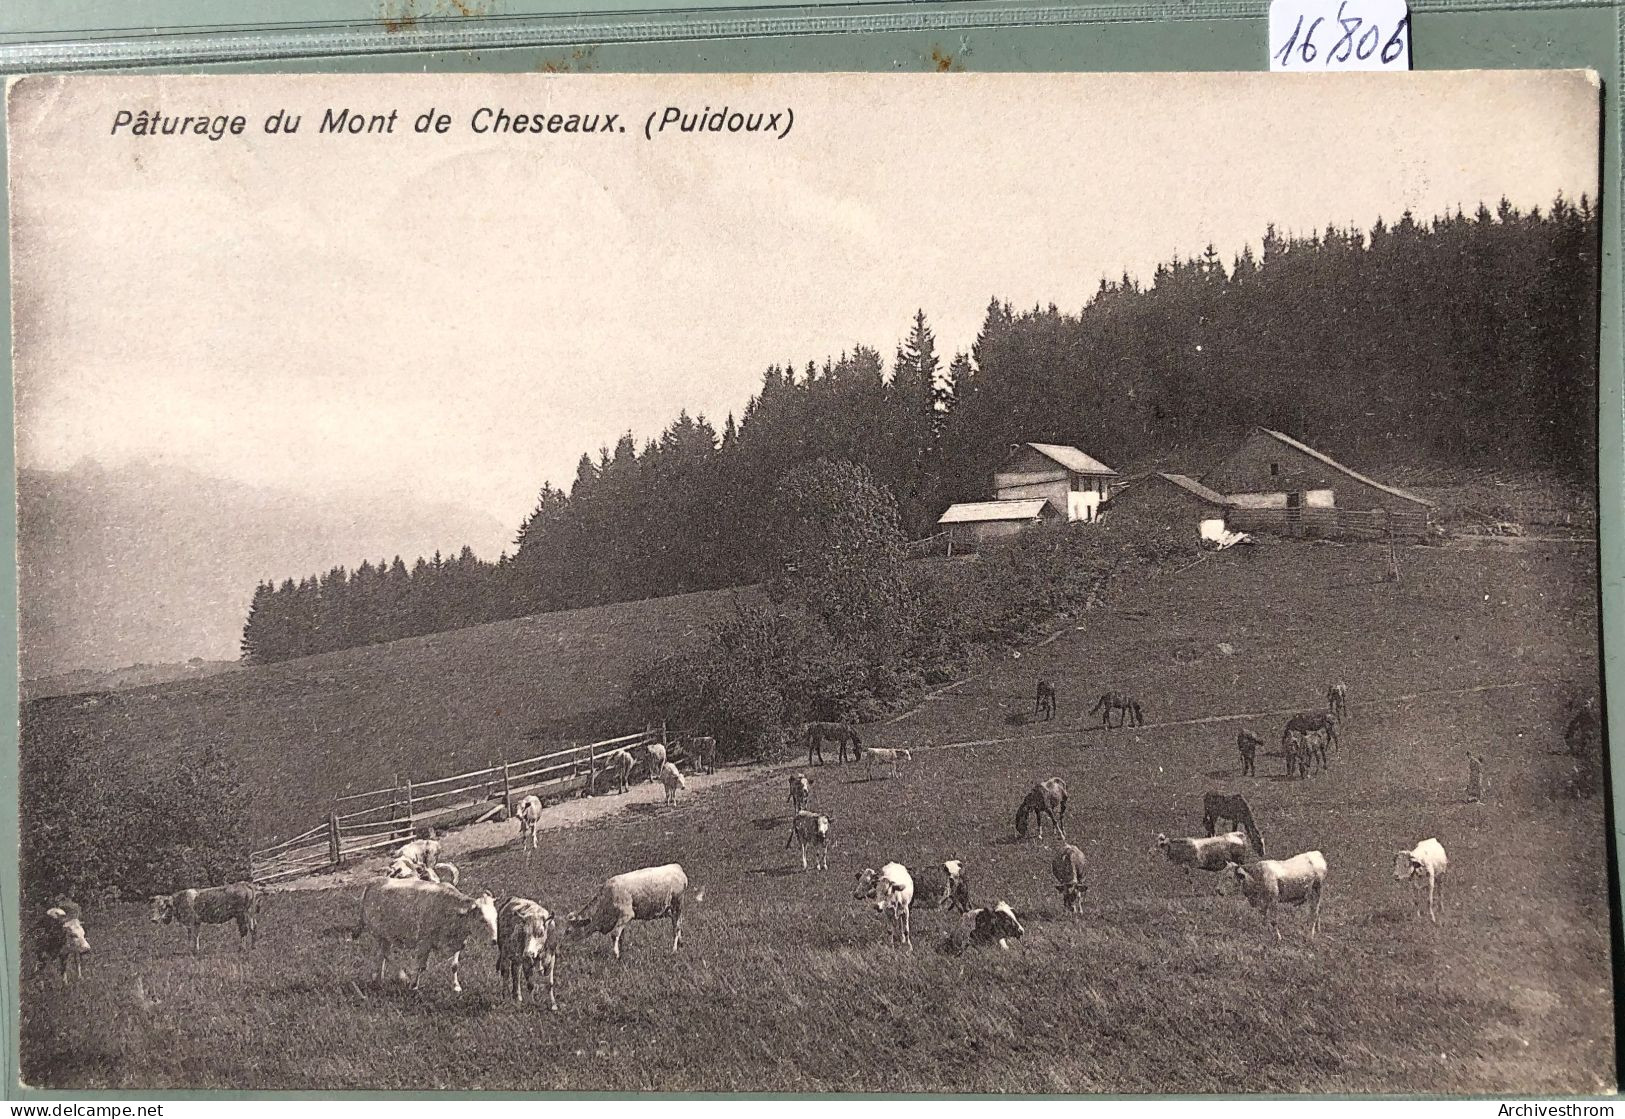 Pâturages Du Mont De Cheseaux (Vaud) Sur Puidoux - Vaches Et Ferme (16'806) - Puidoux